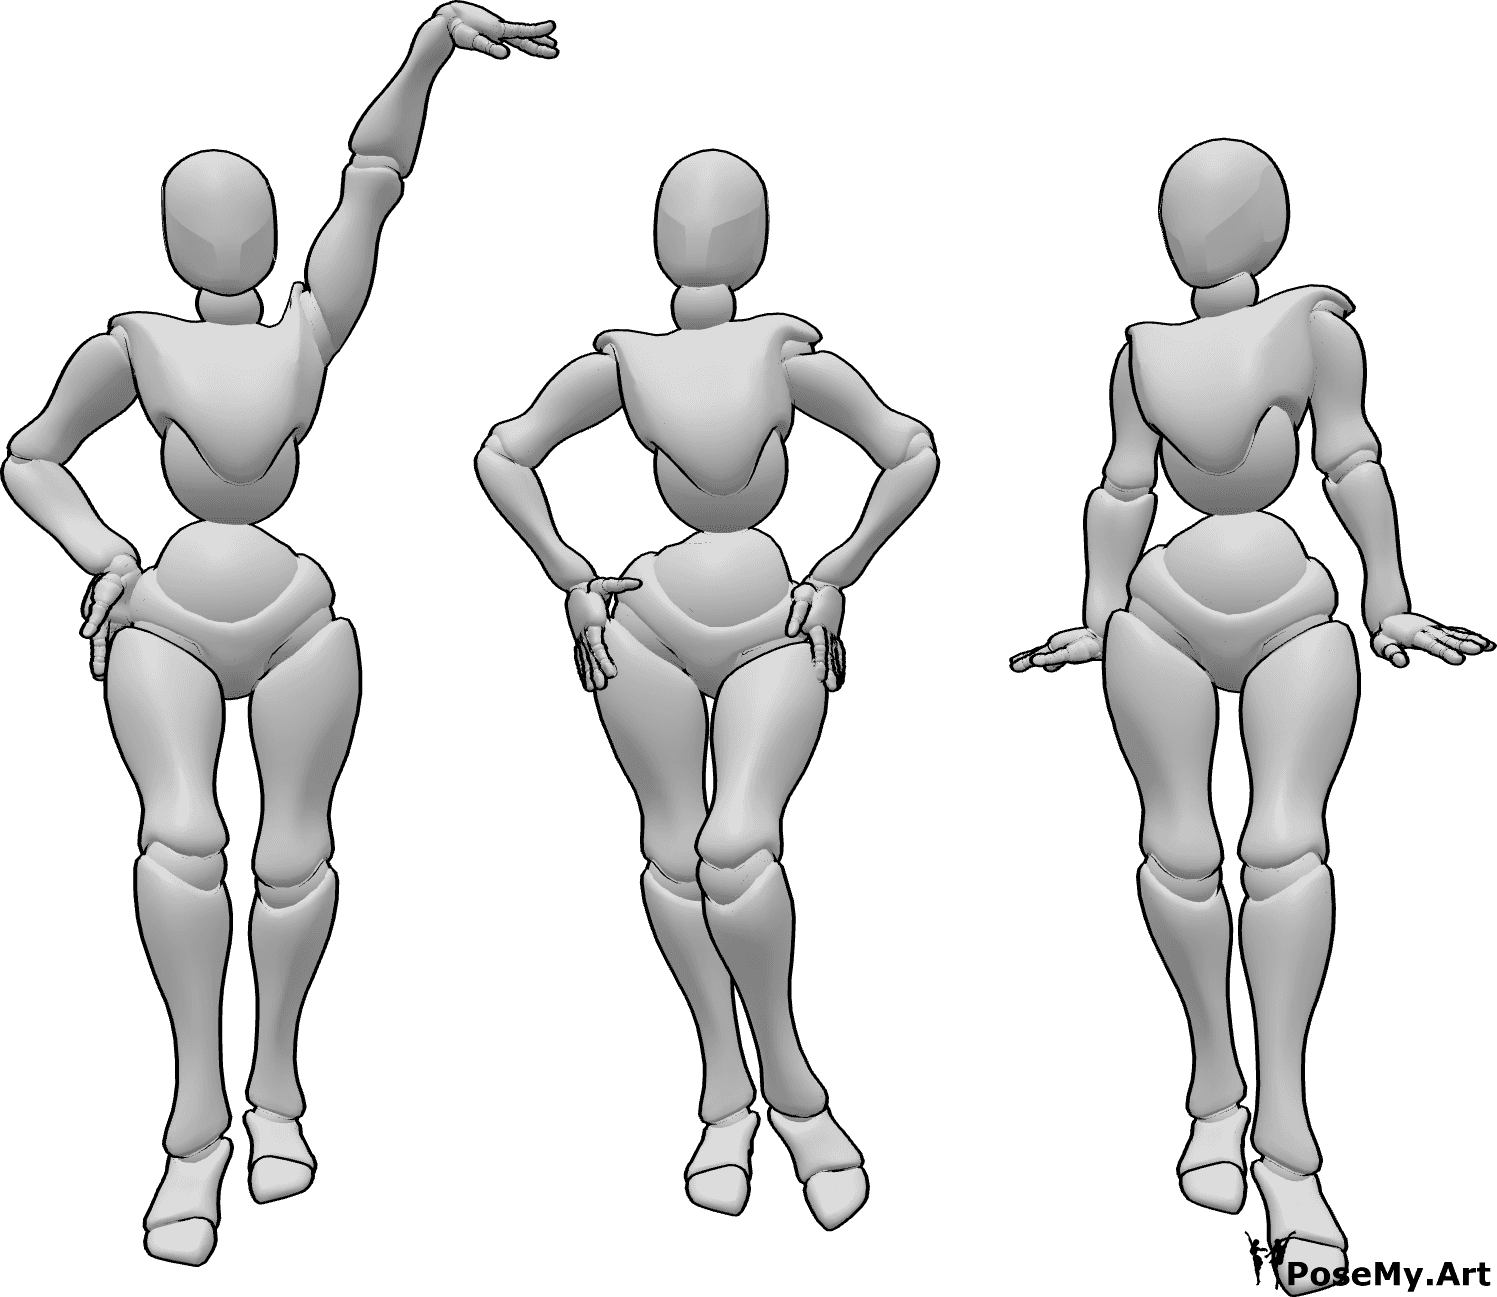 Referência de poses- Três mulheres em pose de pé - Três mulheres estão de pé e a posar como modelos